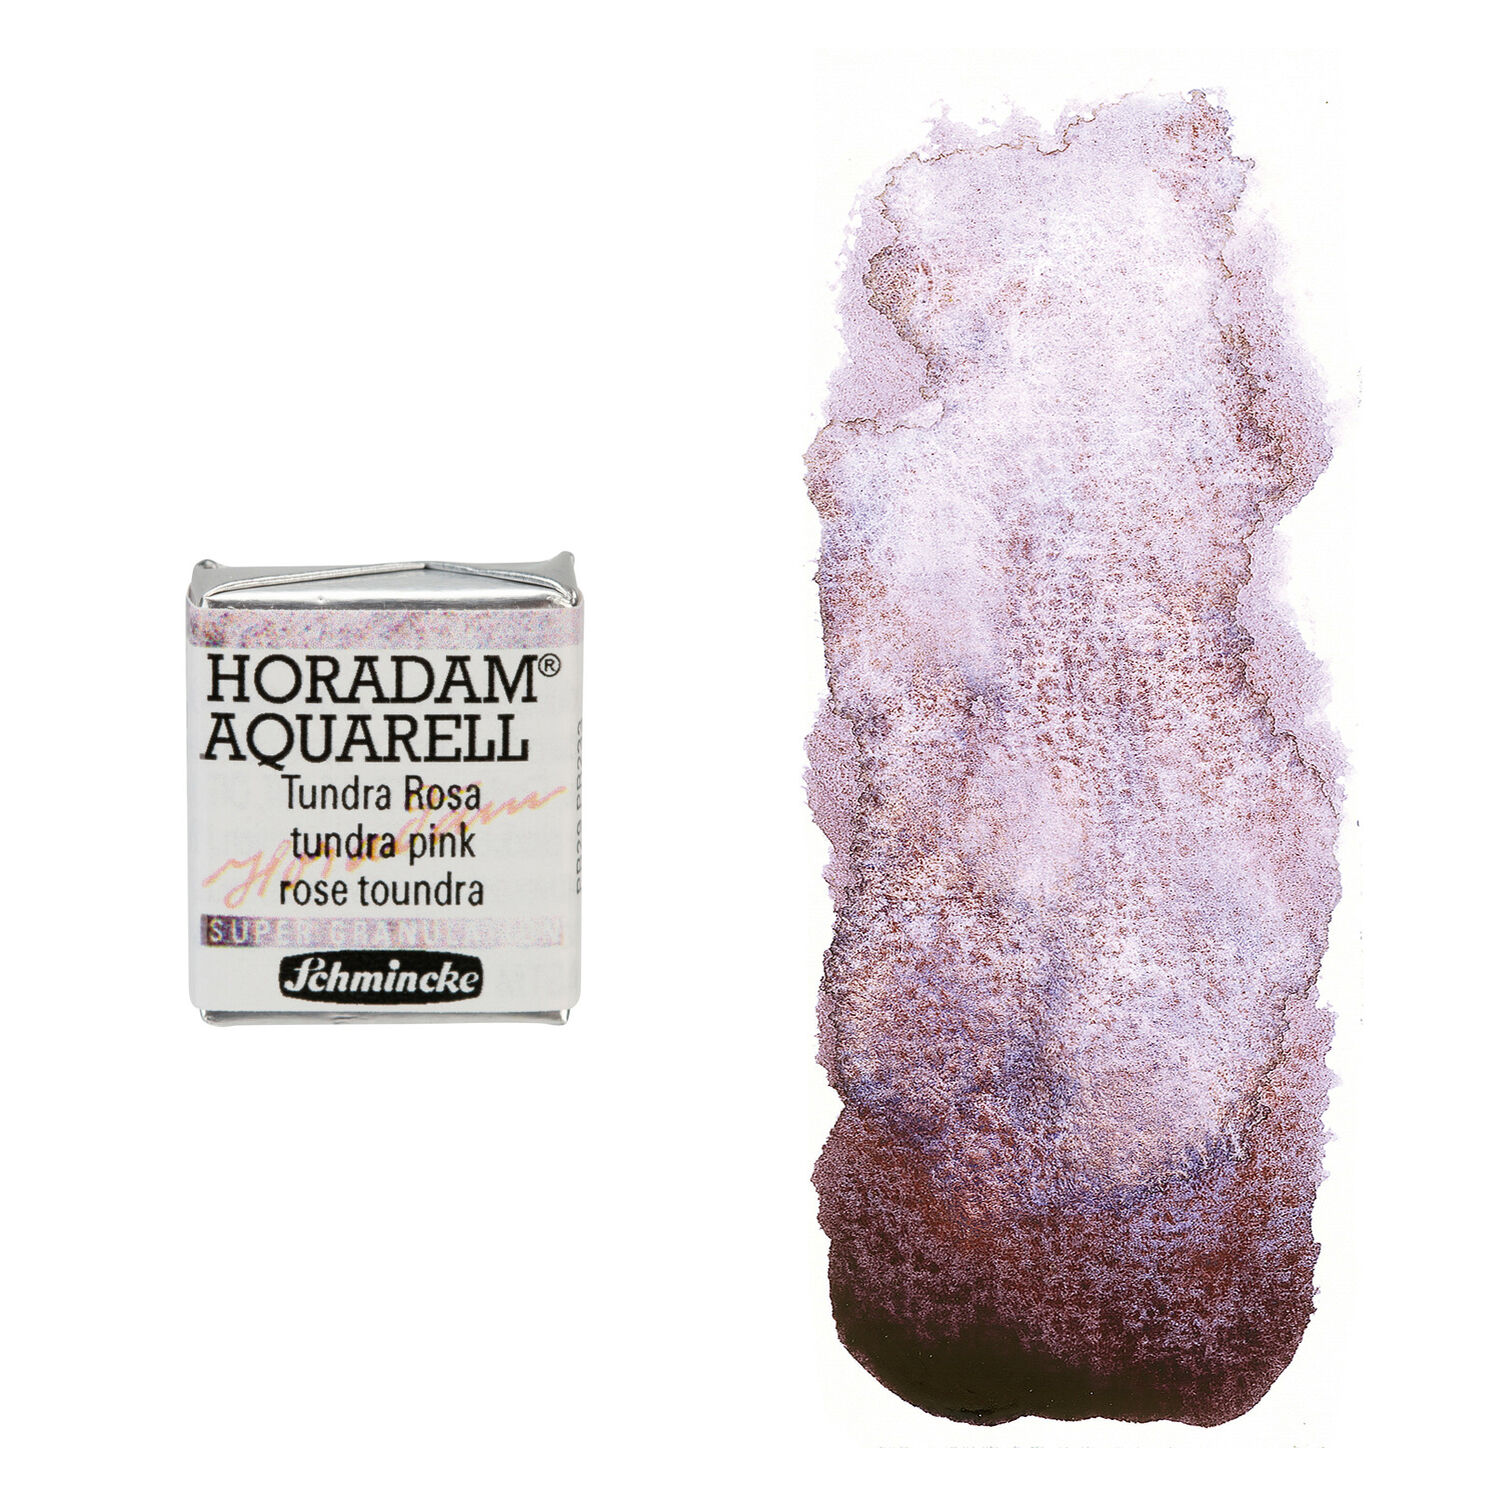 NEU Horadam Aquarell Super Granulation, 1/2 Npfchen, Tundra Rosa